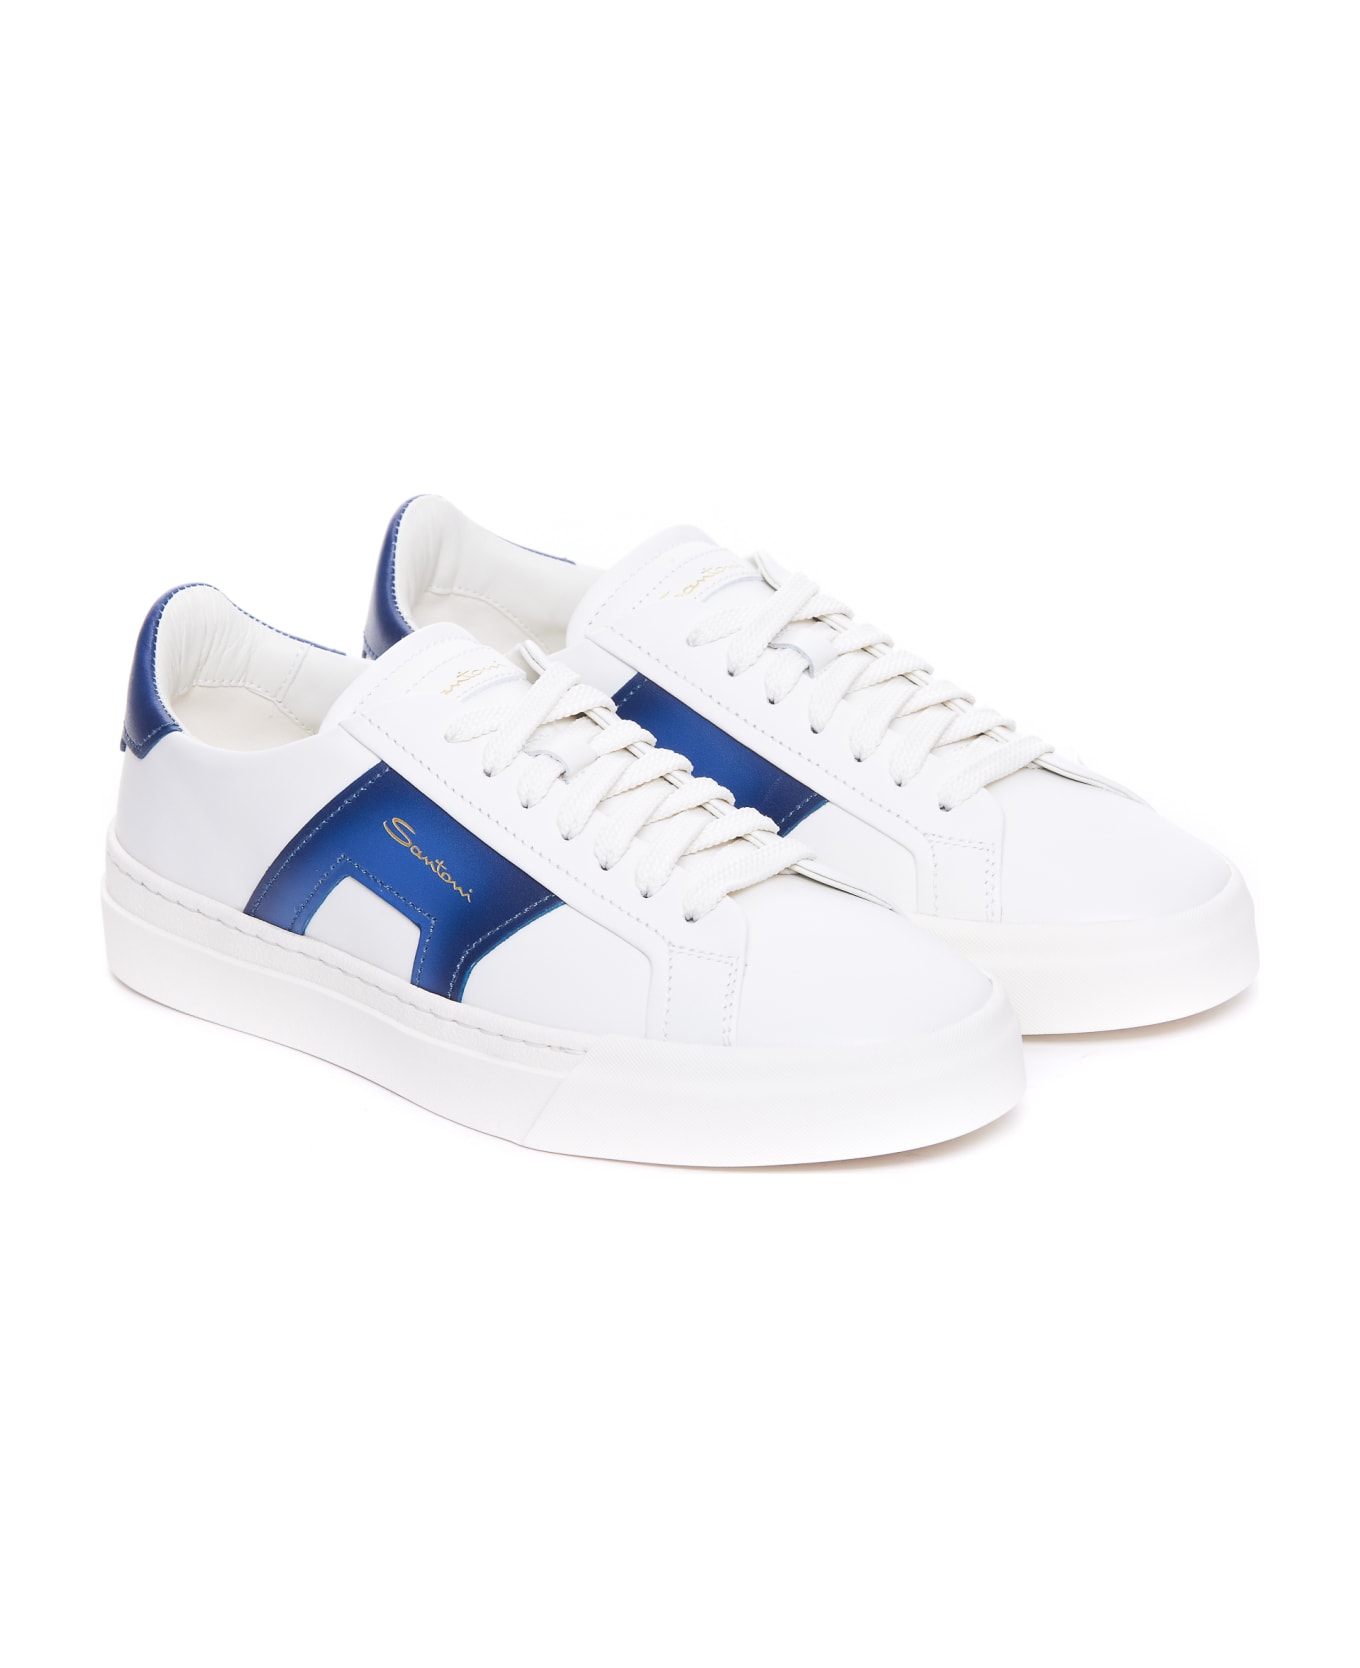 Santoni Dbs2 Sneakers - White